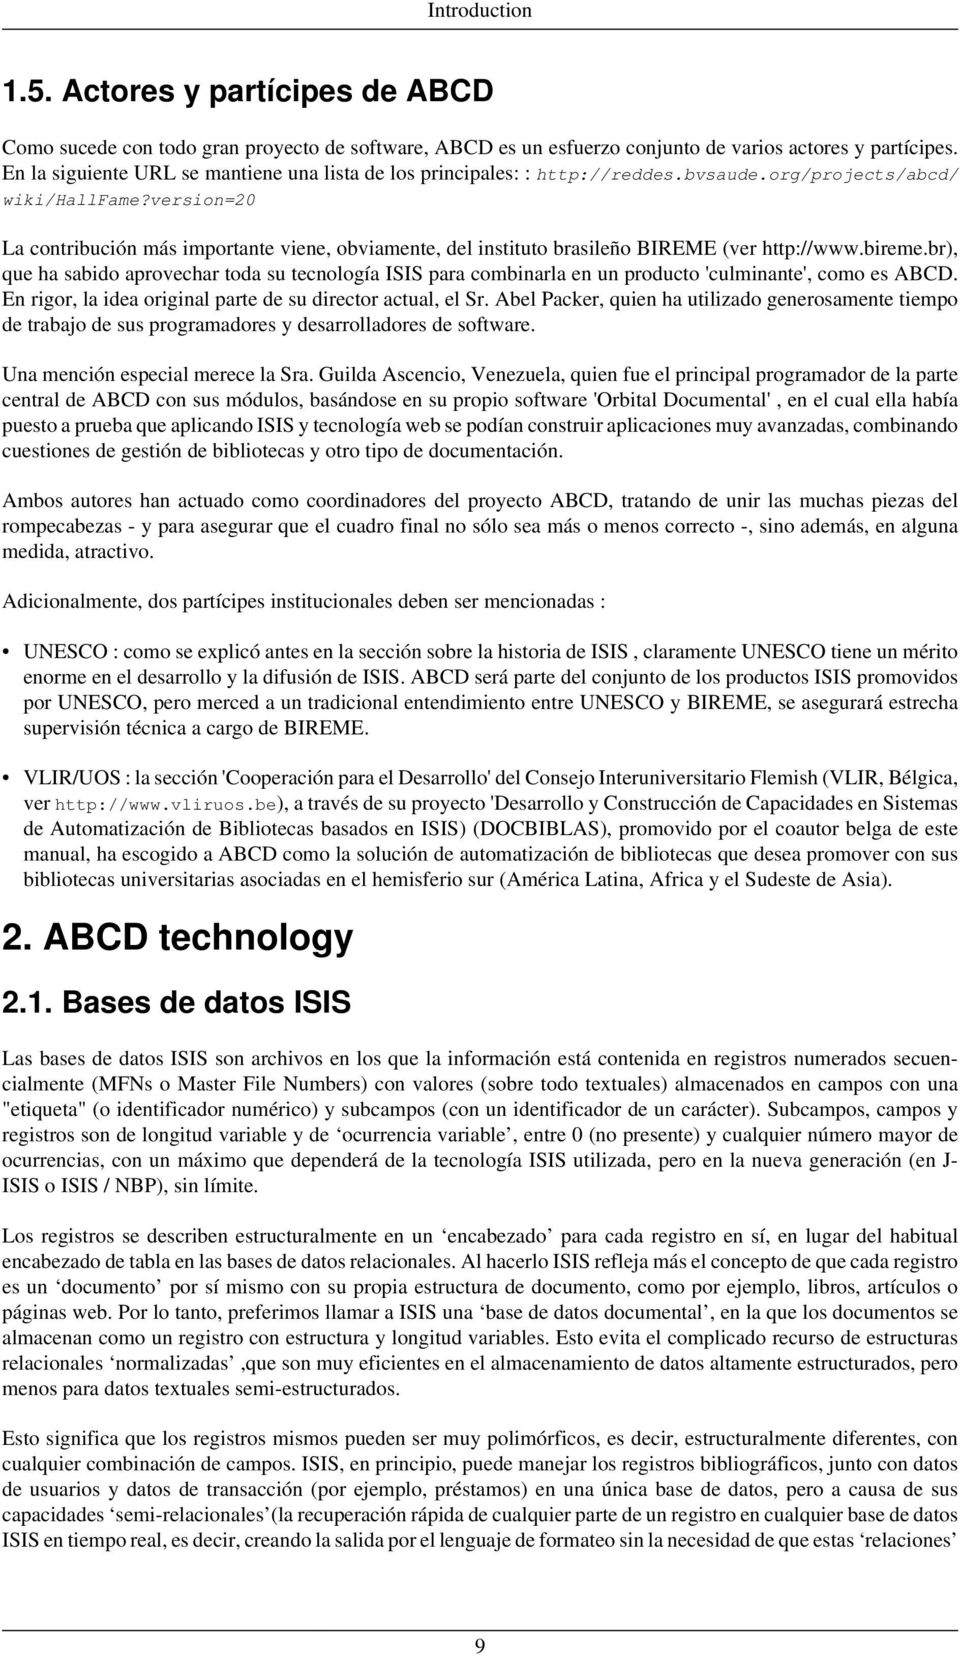 version=20 La contribución más importante viene, obviamente, del instituto brasileño BIREME (ver http://www.bireme.